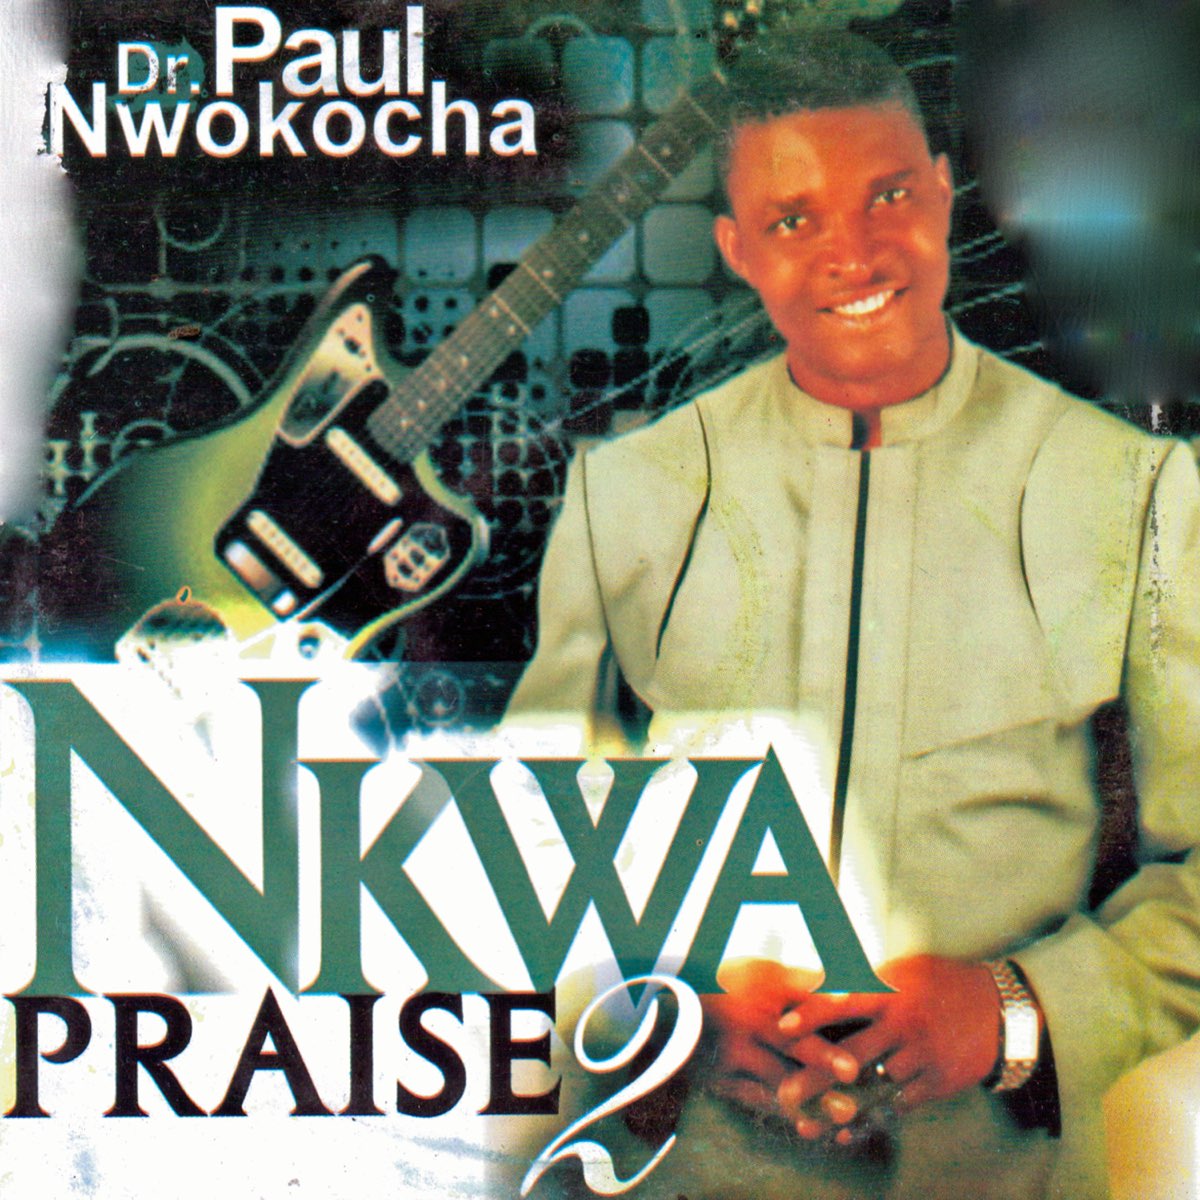 Paul Nwokocha - Nkwa Praise 2 (Track 1)